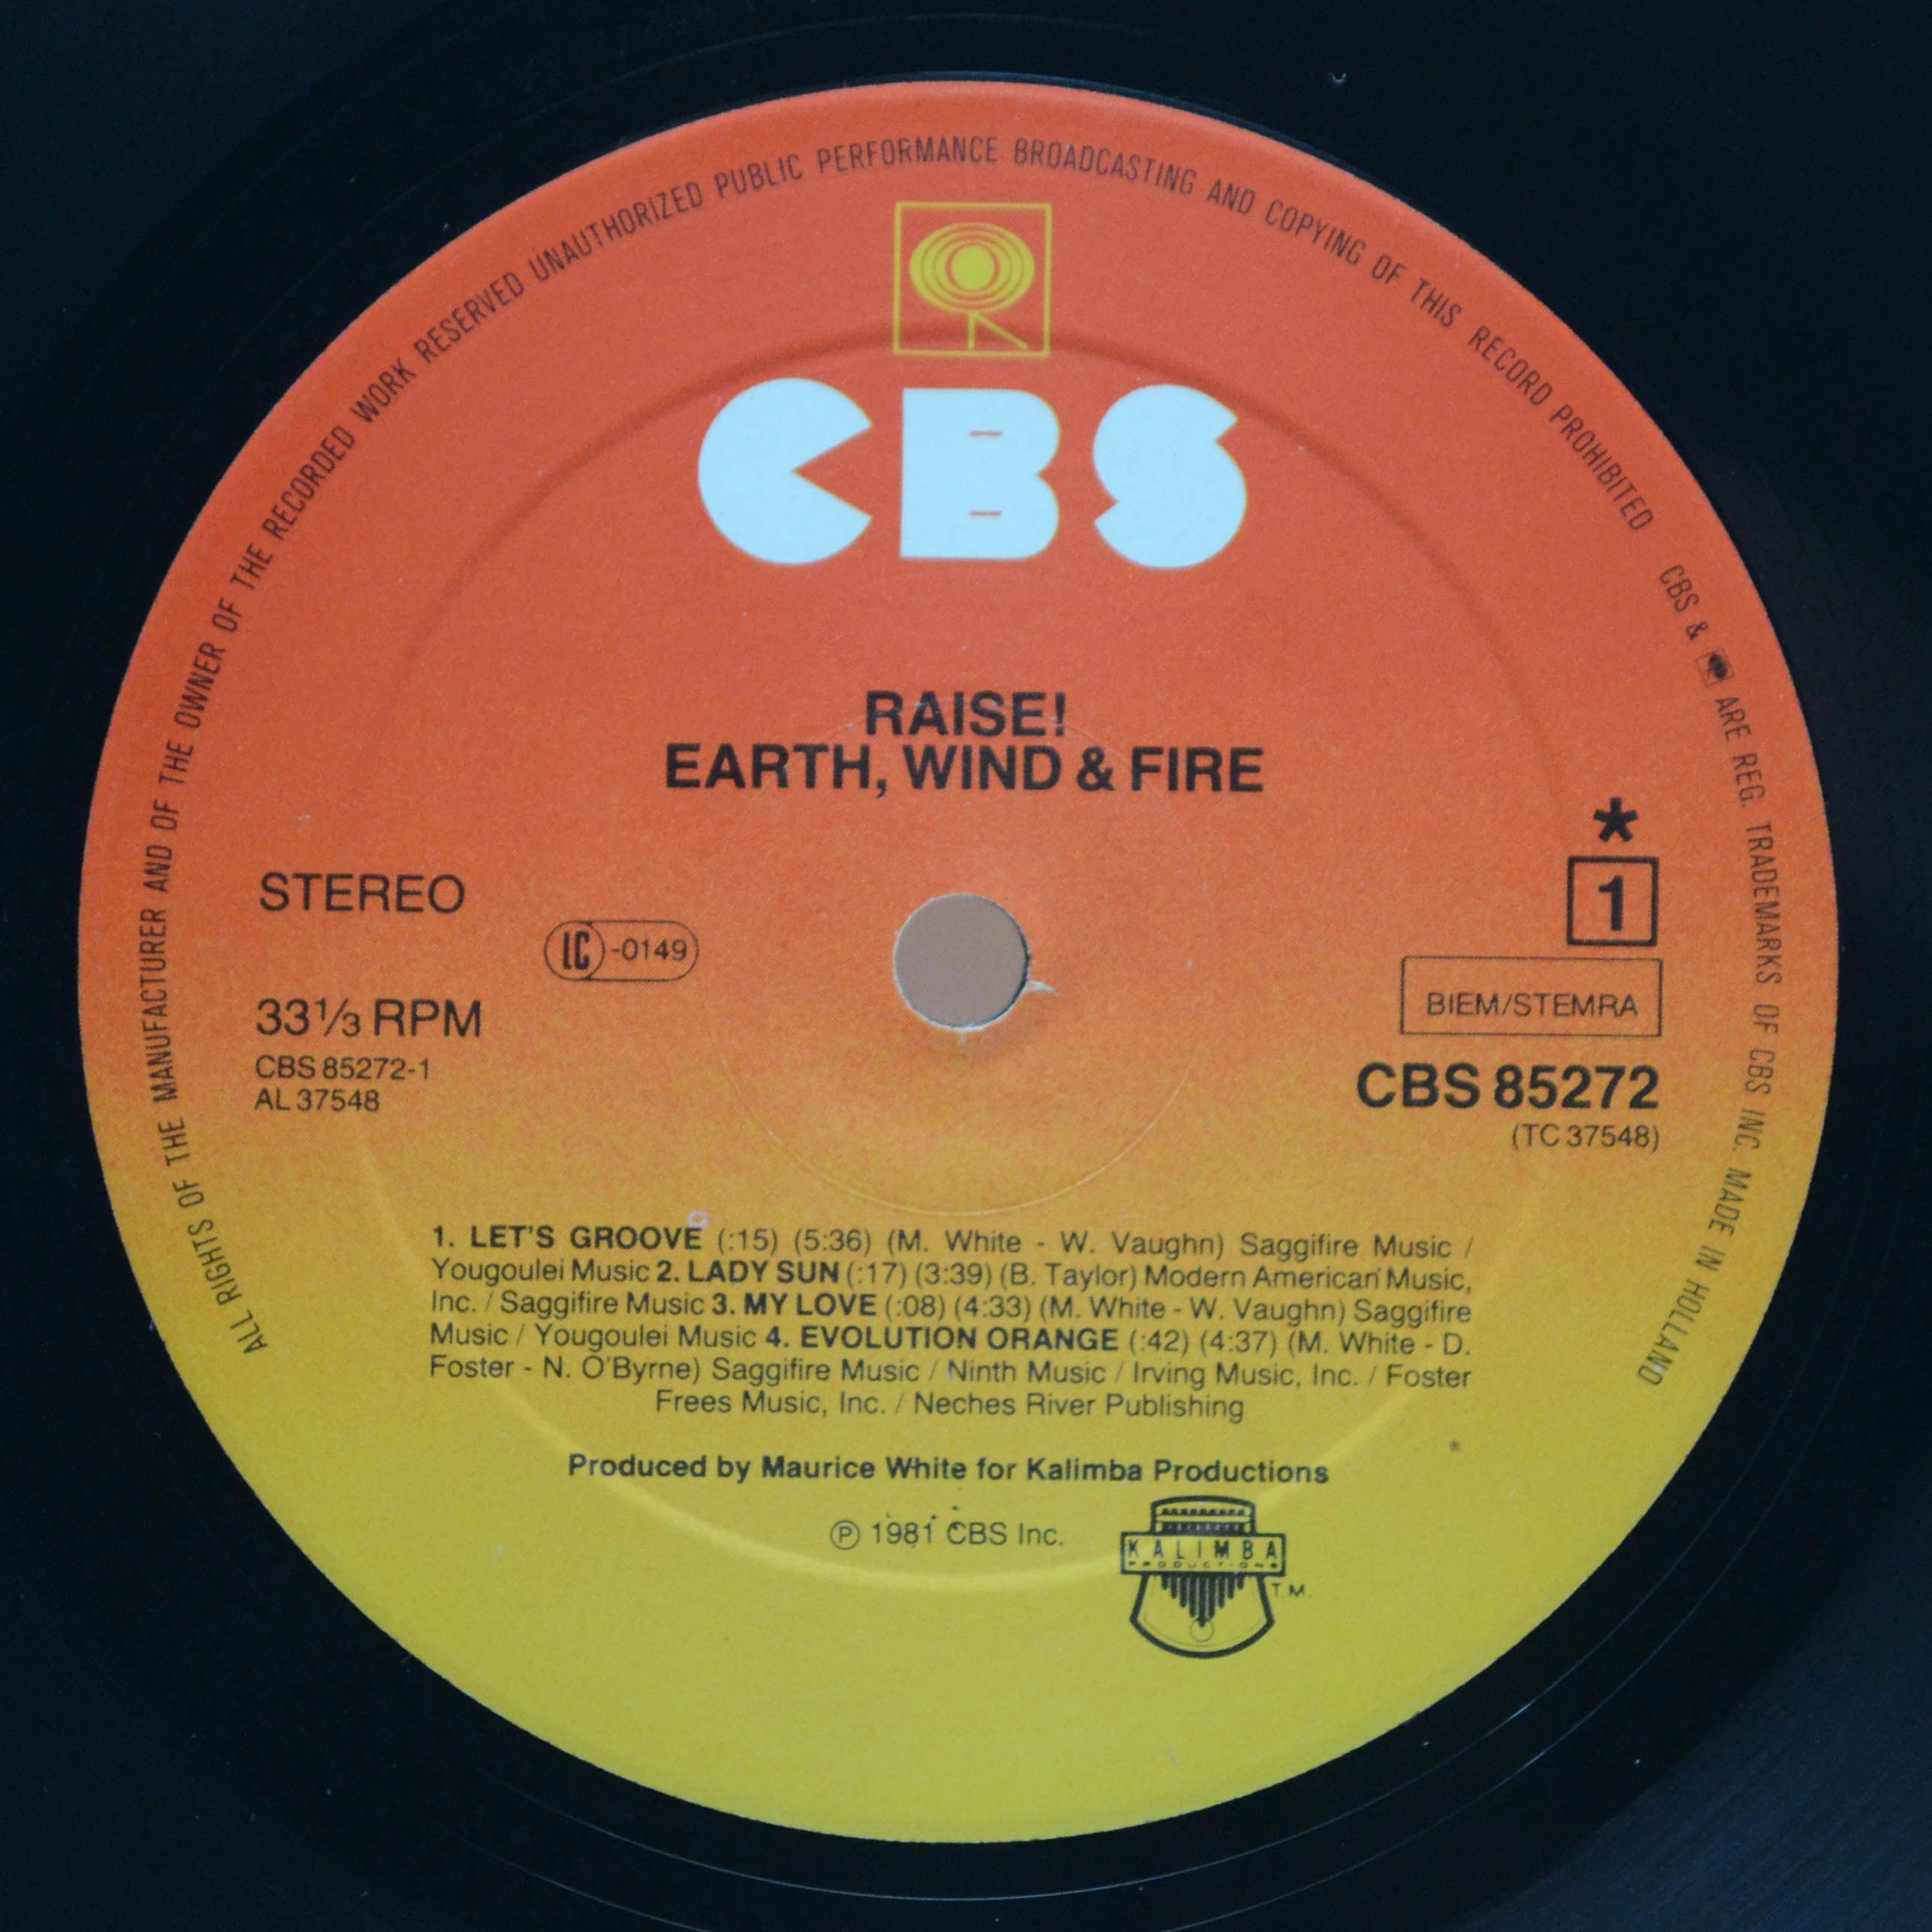 Earth, Wind & Fire — Raise!, 1981